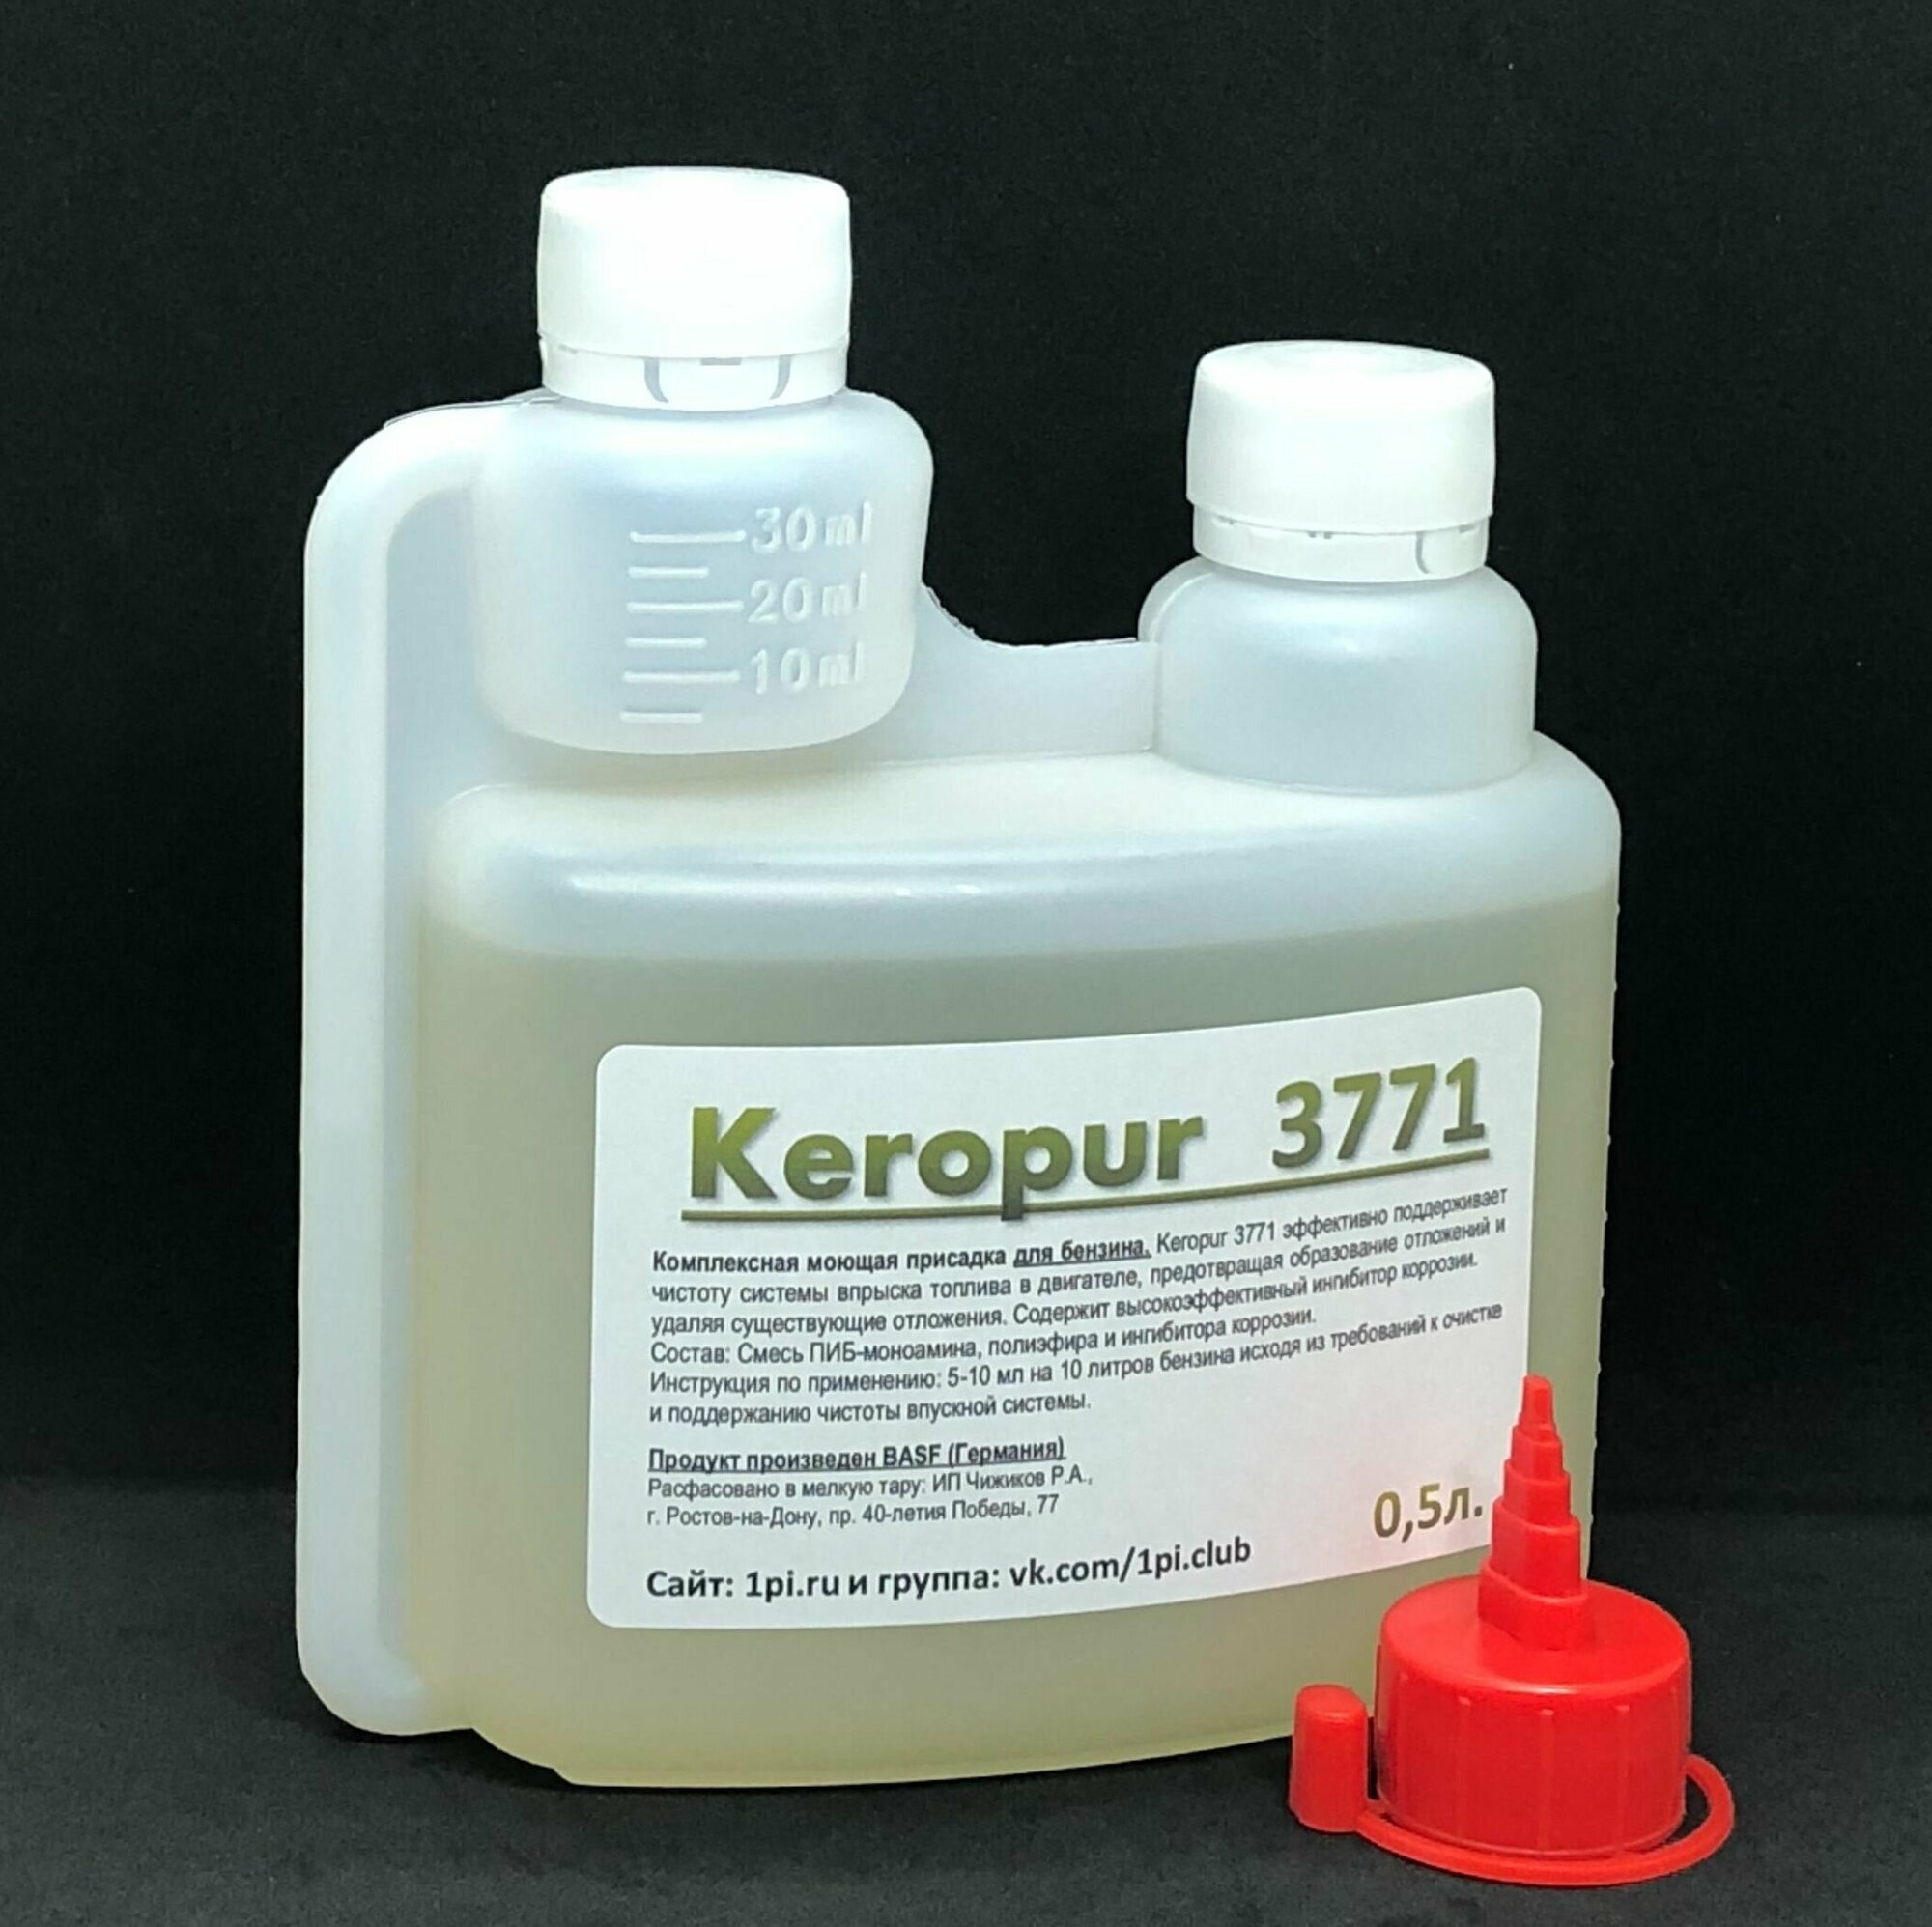 Keropur 3771 BASF промышленная комплексная присадка для бензина